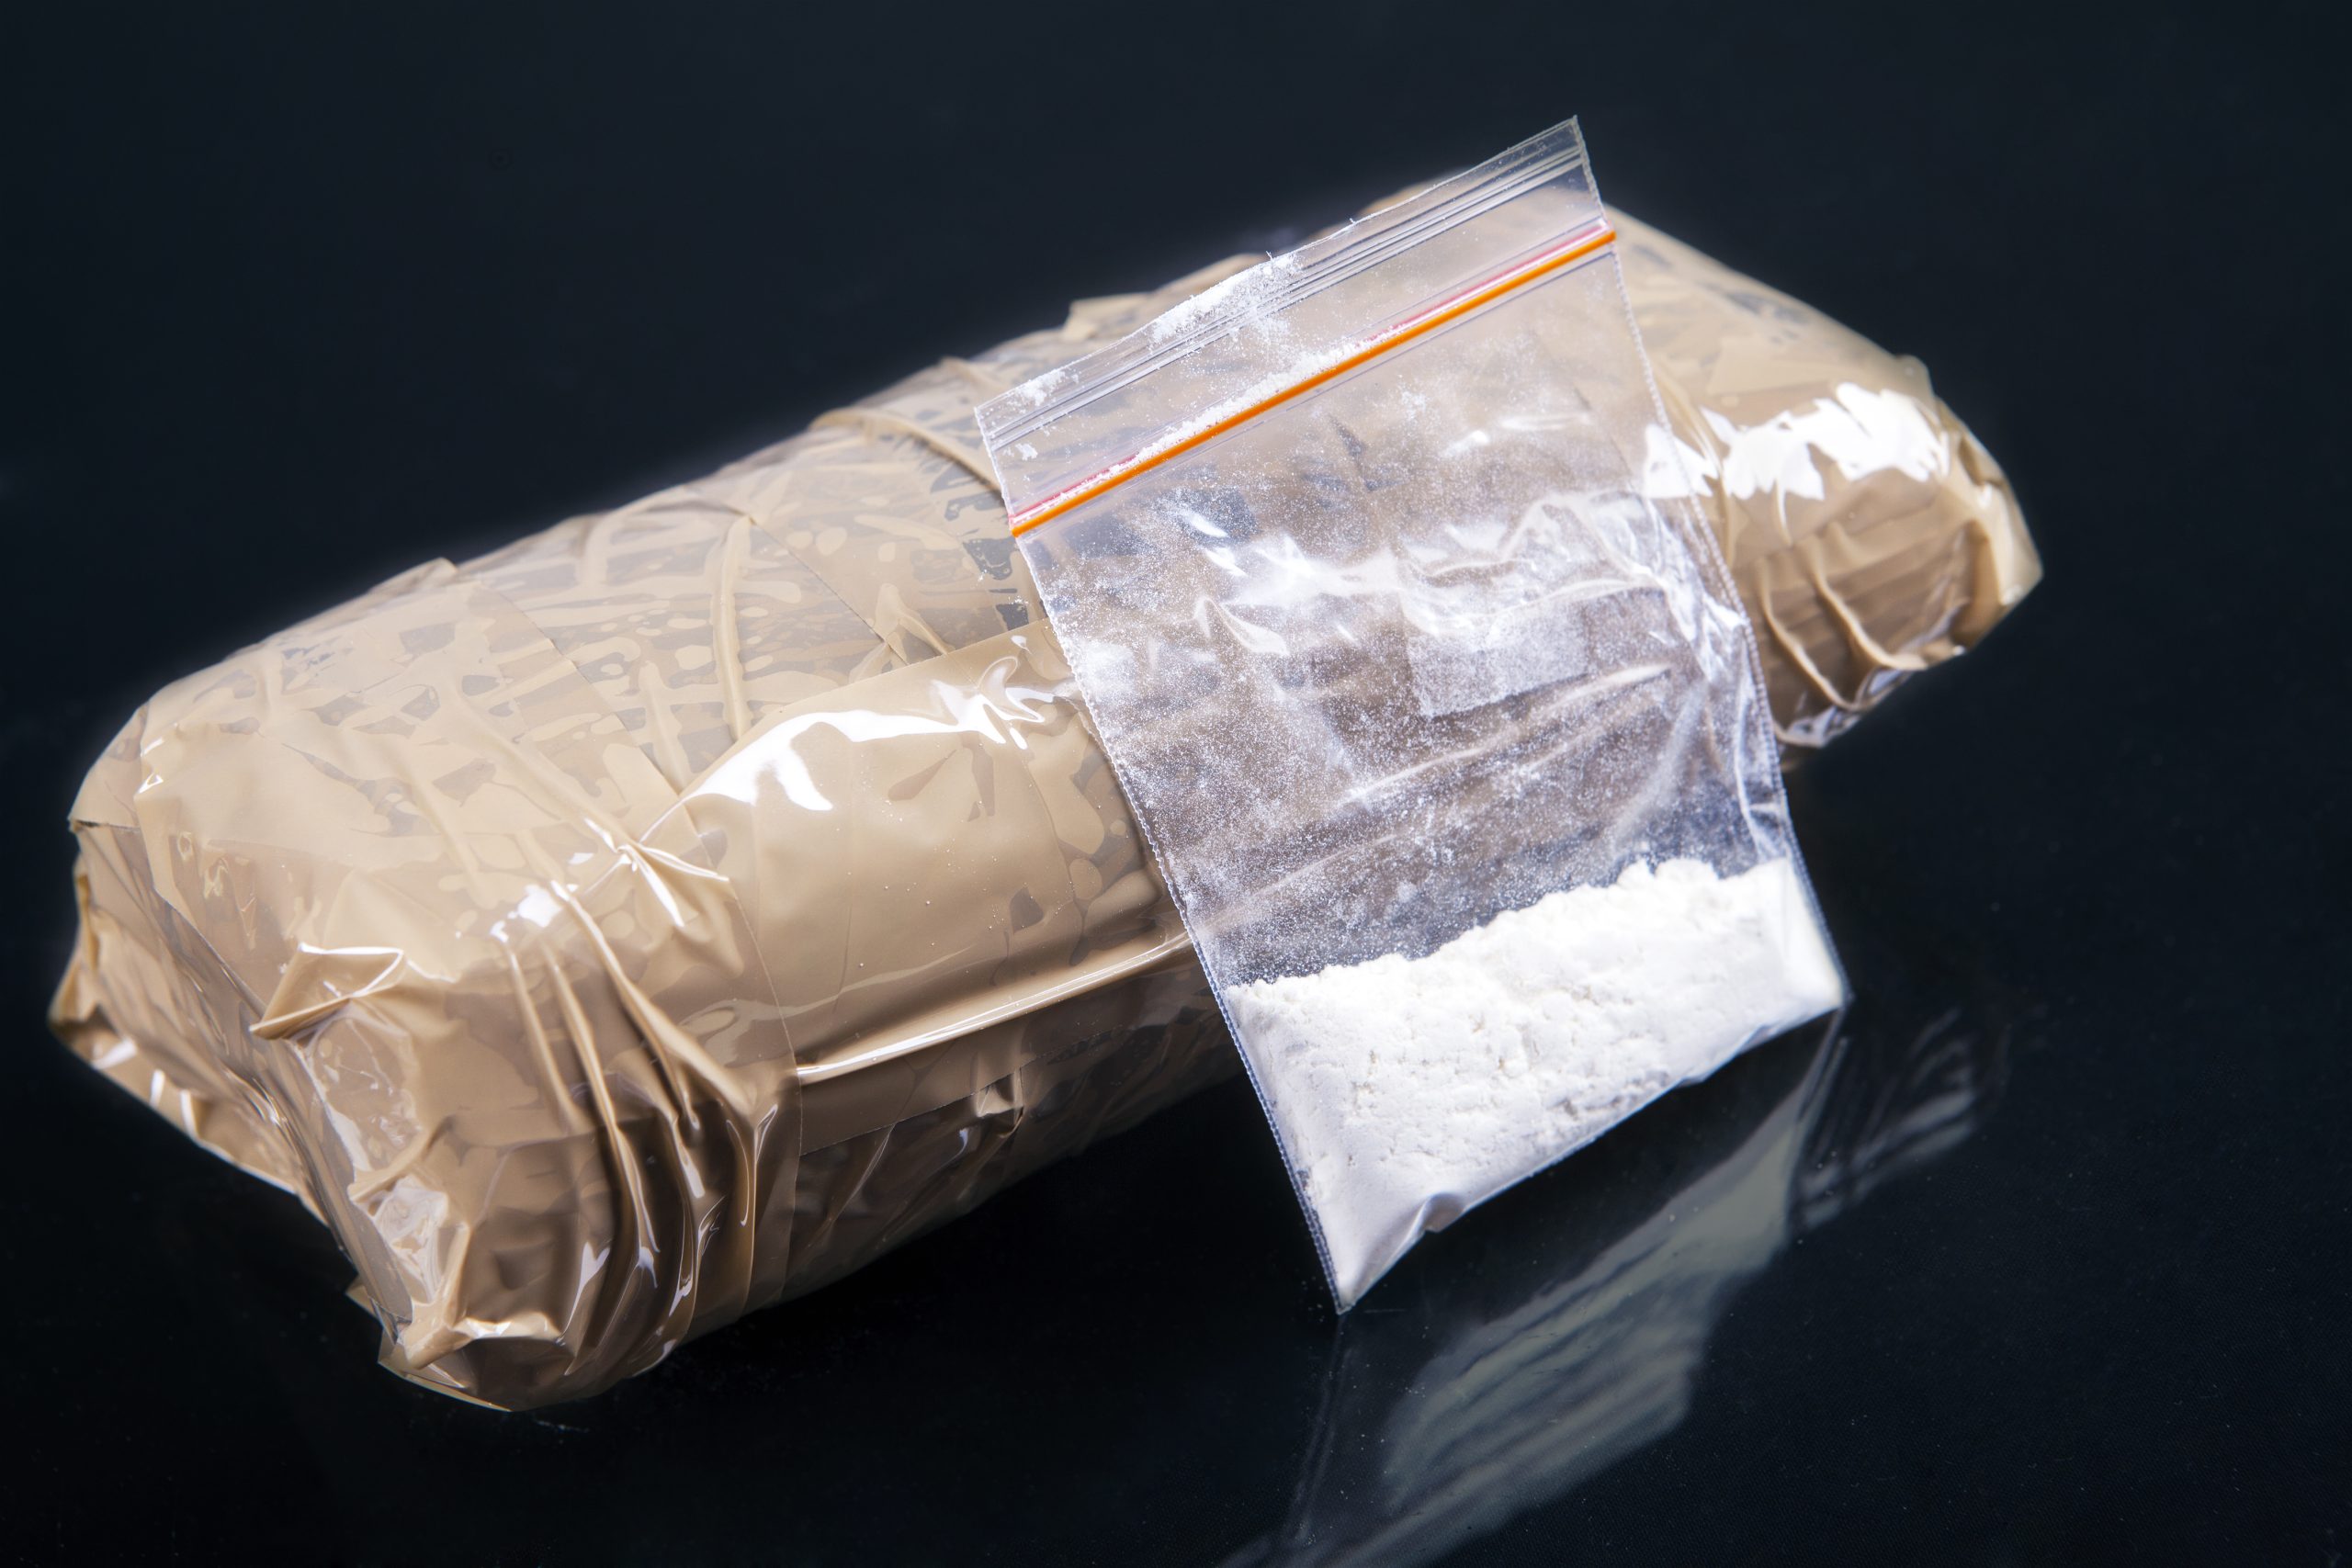 Operação “Tuga” apreende grande quantidade de cocaína em alto mar